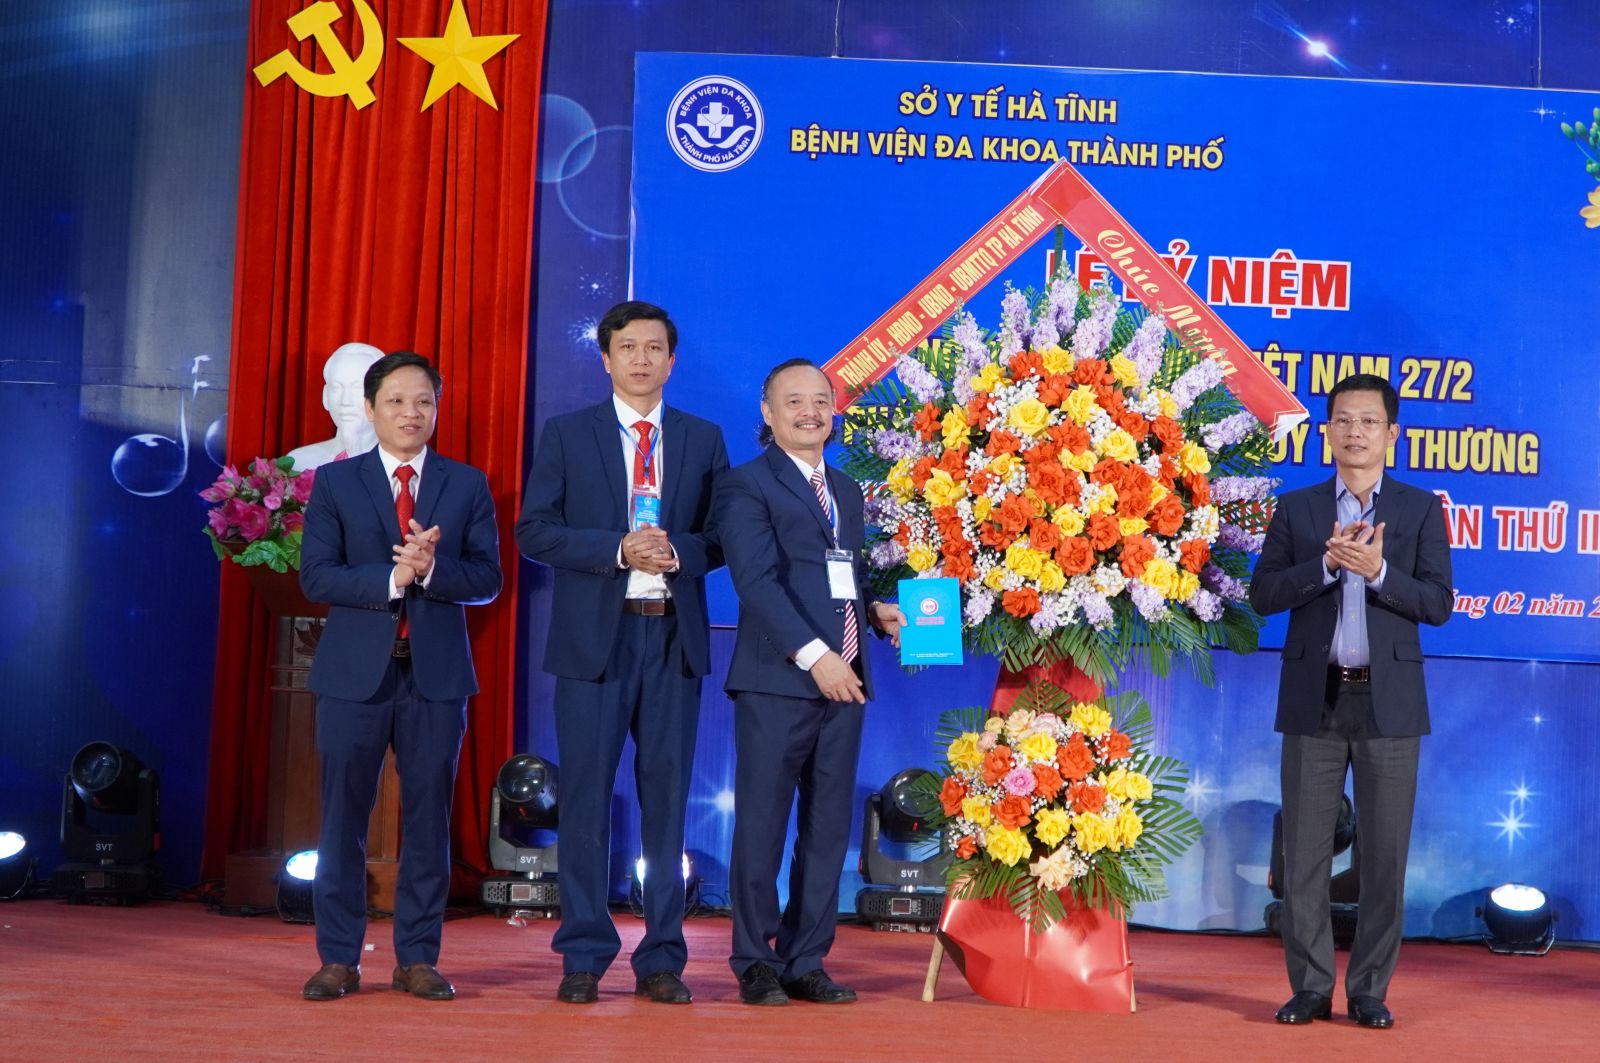 Bệnh viện Đa khoa Thành phố kỷ niệm ngày Thầy thuốc Việt Nam và quyên góp ủng hộ quỹ tình thương